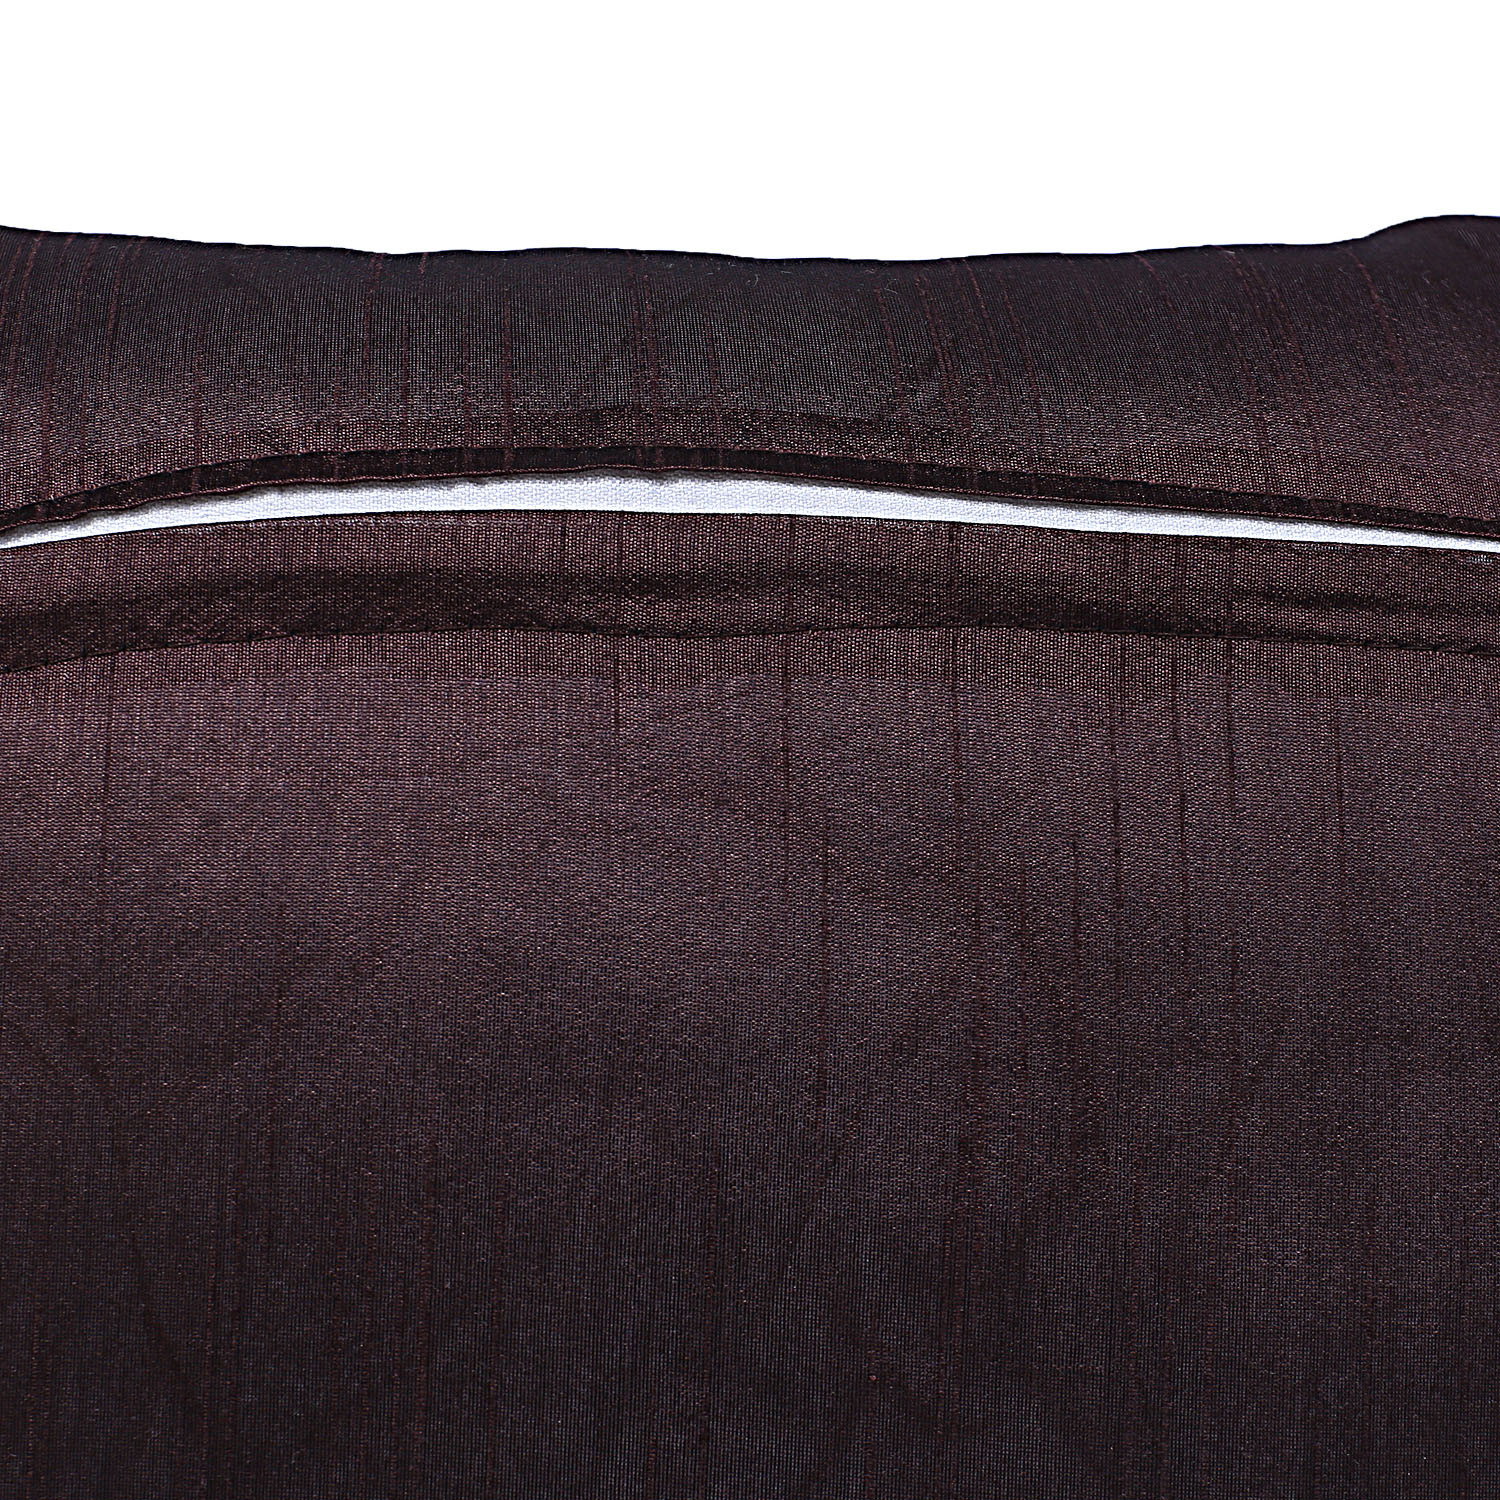 Kuber Industries Embossed Flower Print Cushion Cover|Ractangle Cushion Covers|Sofa Cushion Covers|Cushion Covers 16 inch x 16 inch|Cushion Cover Set of 5 (Brown)